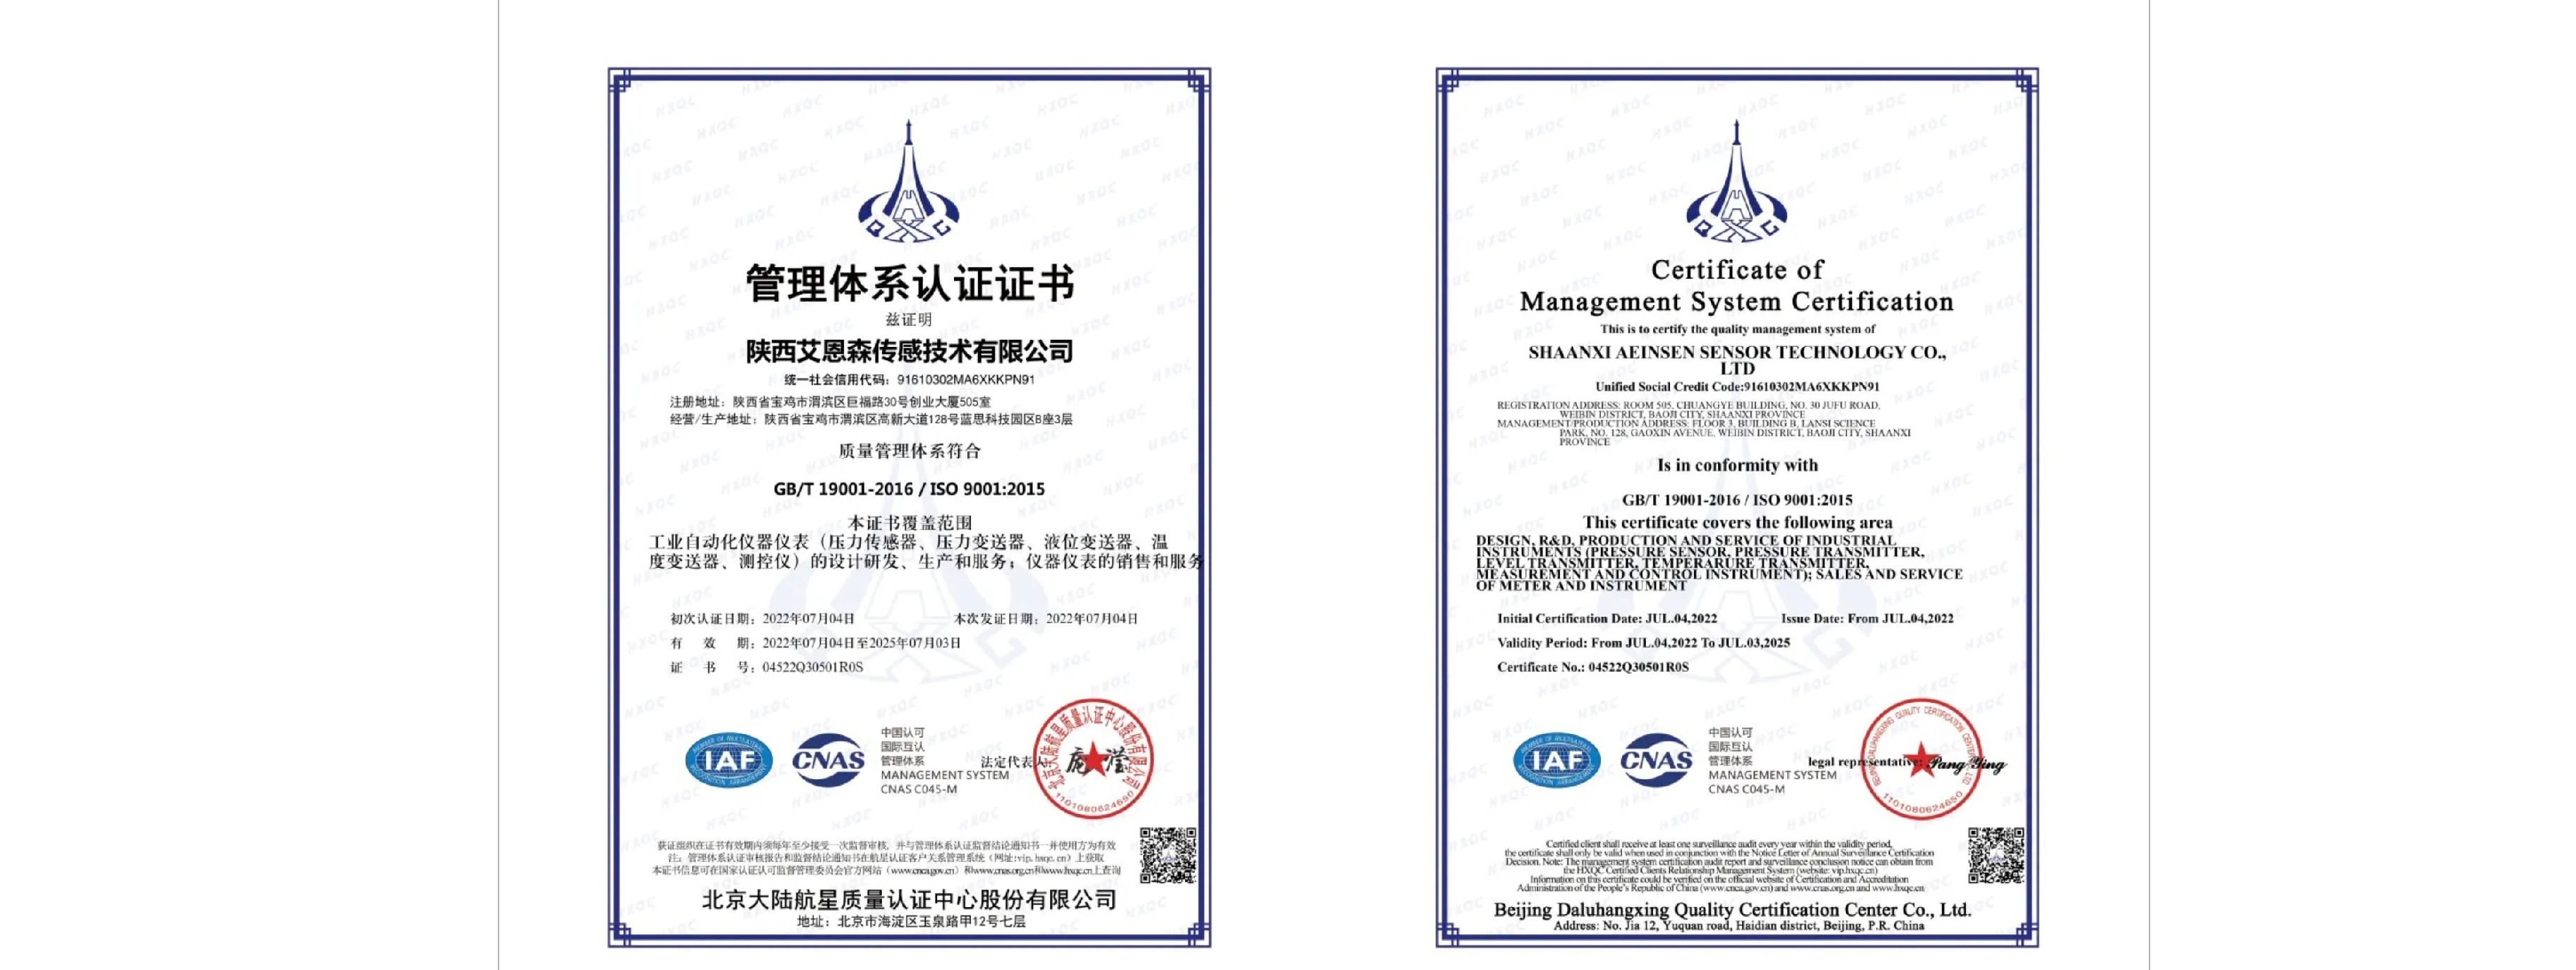 上海艾恩森全资子公司陕西艾恩森传感技术有限公司取得ISO 9000国际质量体系认证证书